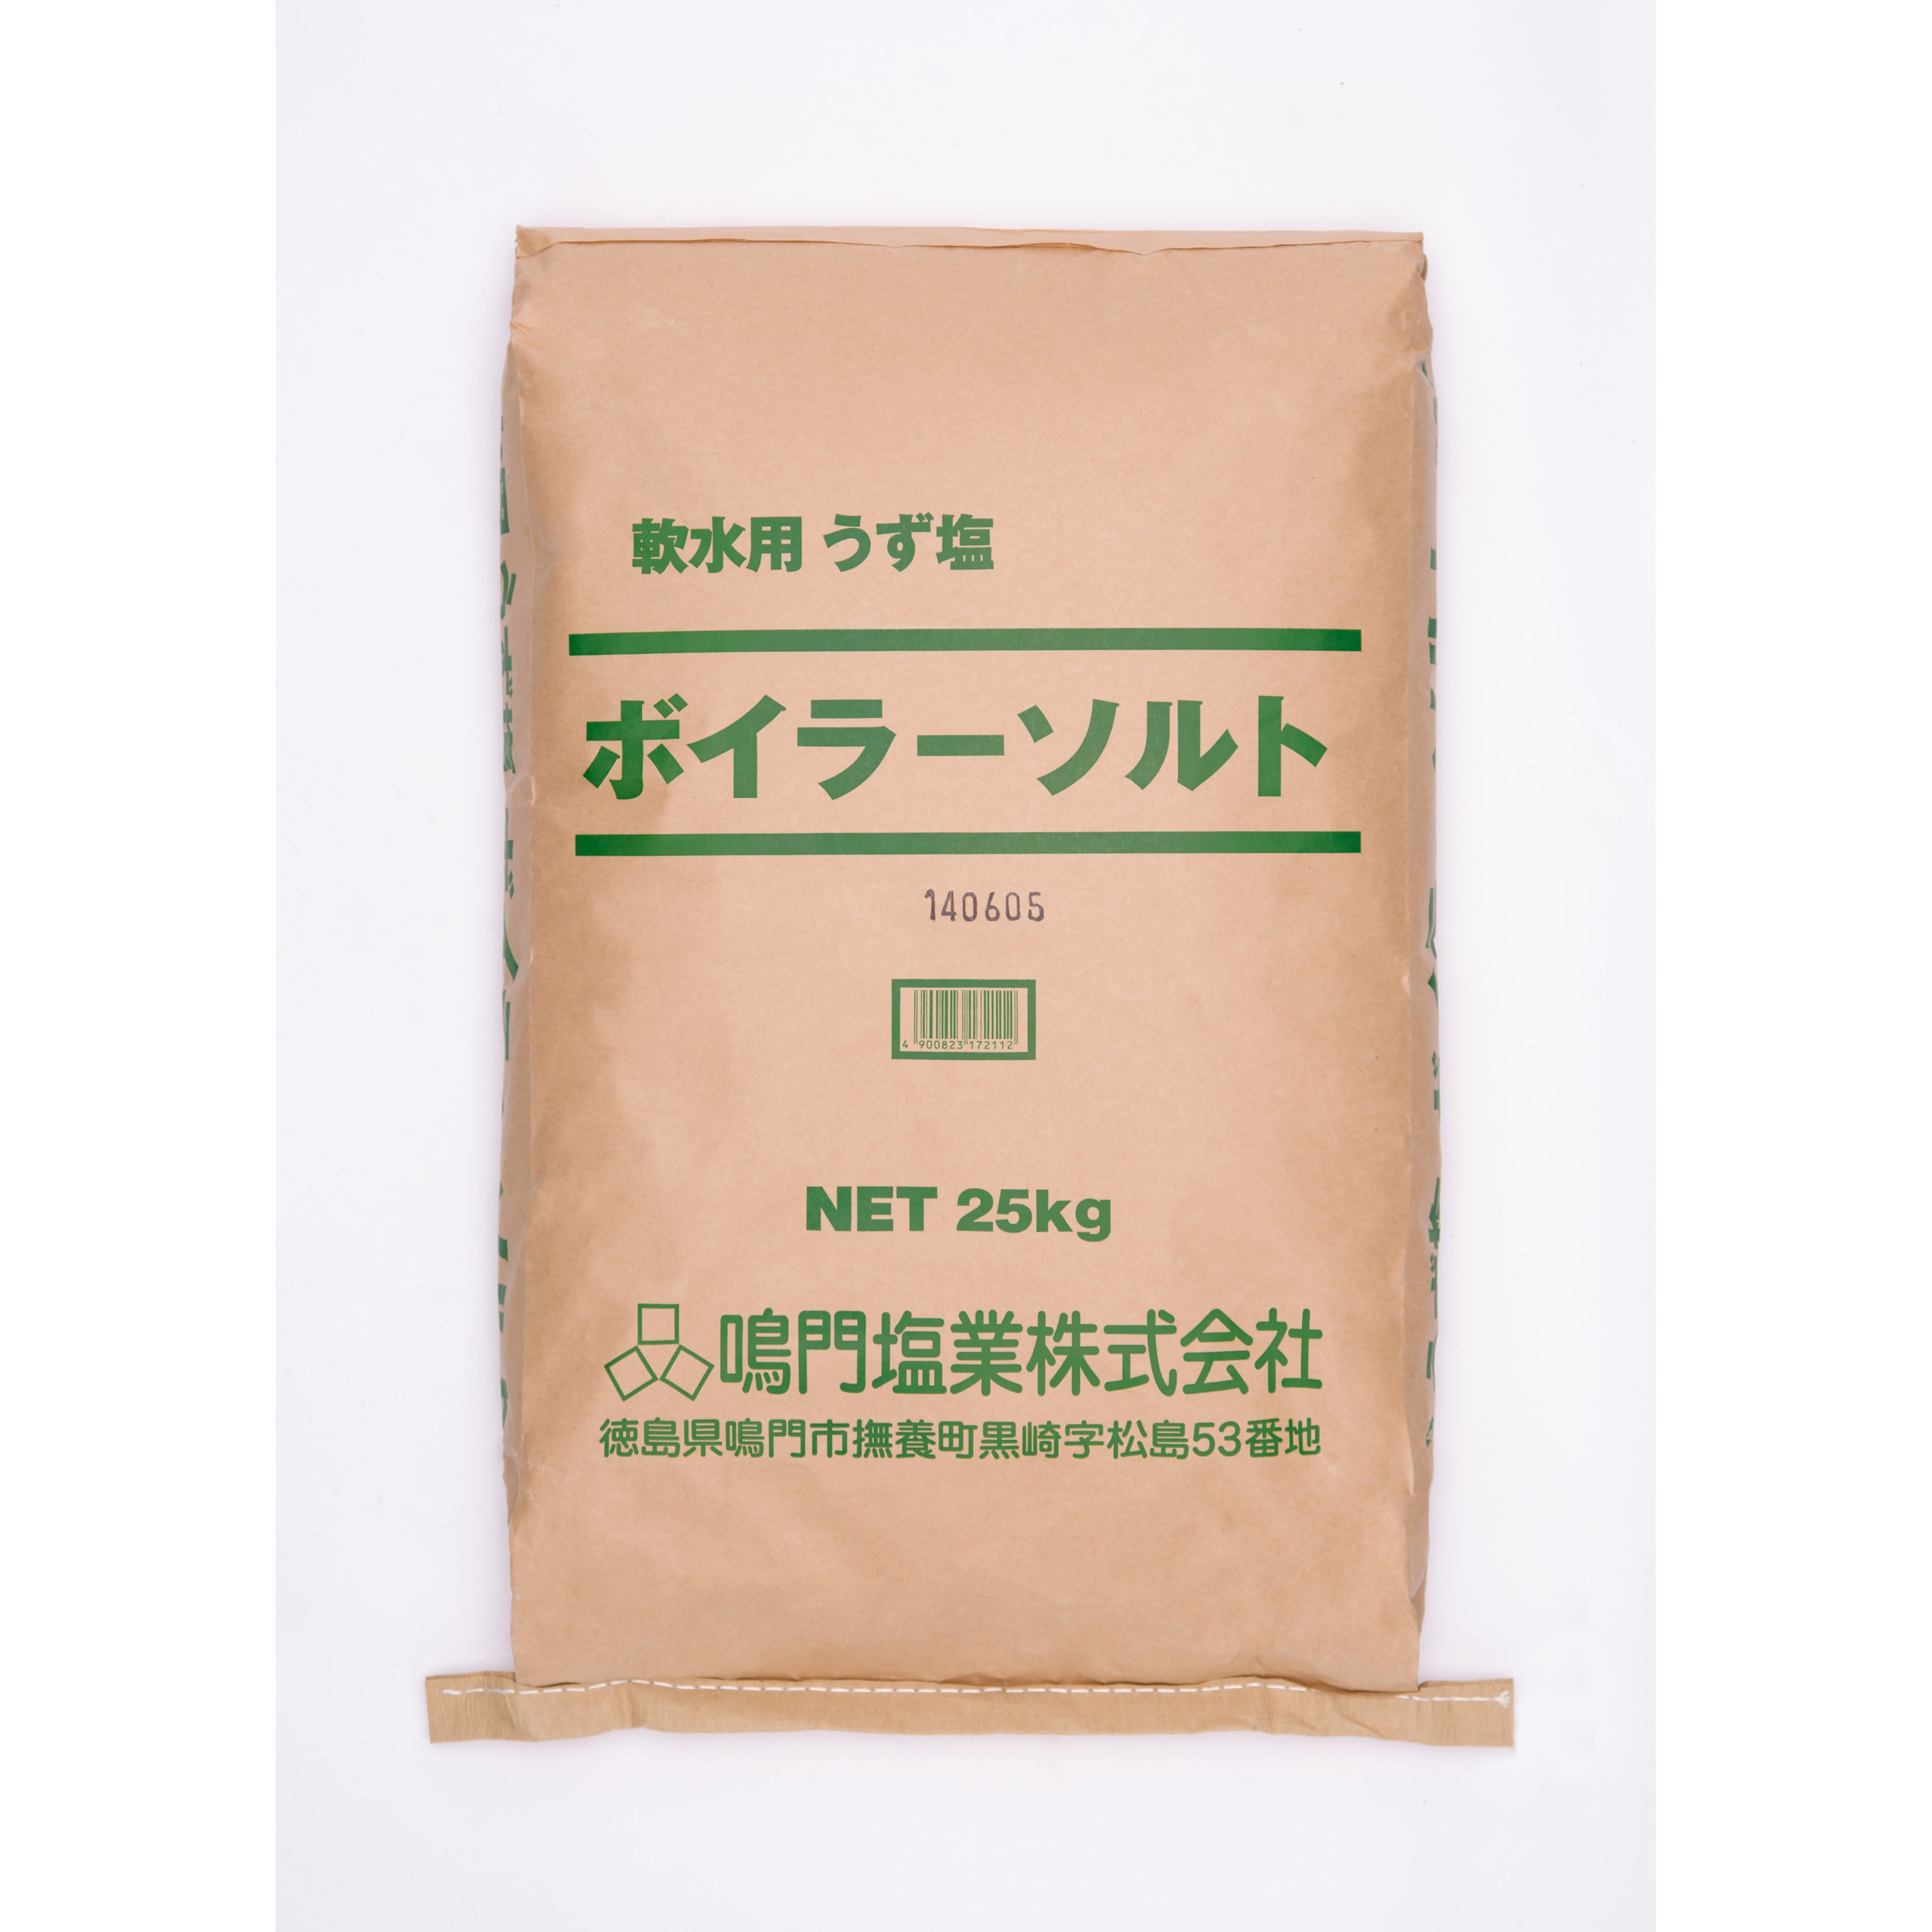 ボイラーソルト 1袋(25kg) 鳴門塩業 【通販サイトMonotaRO】